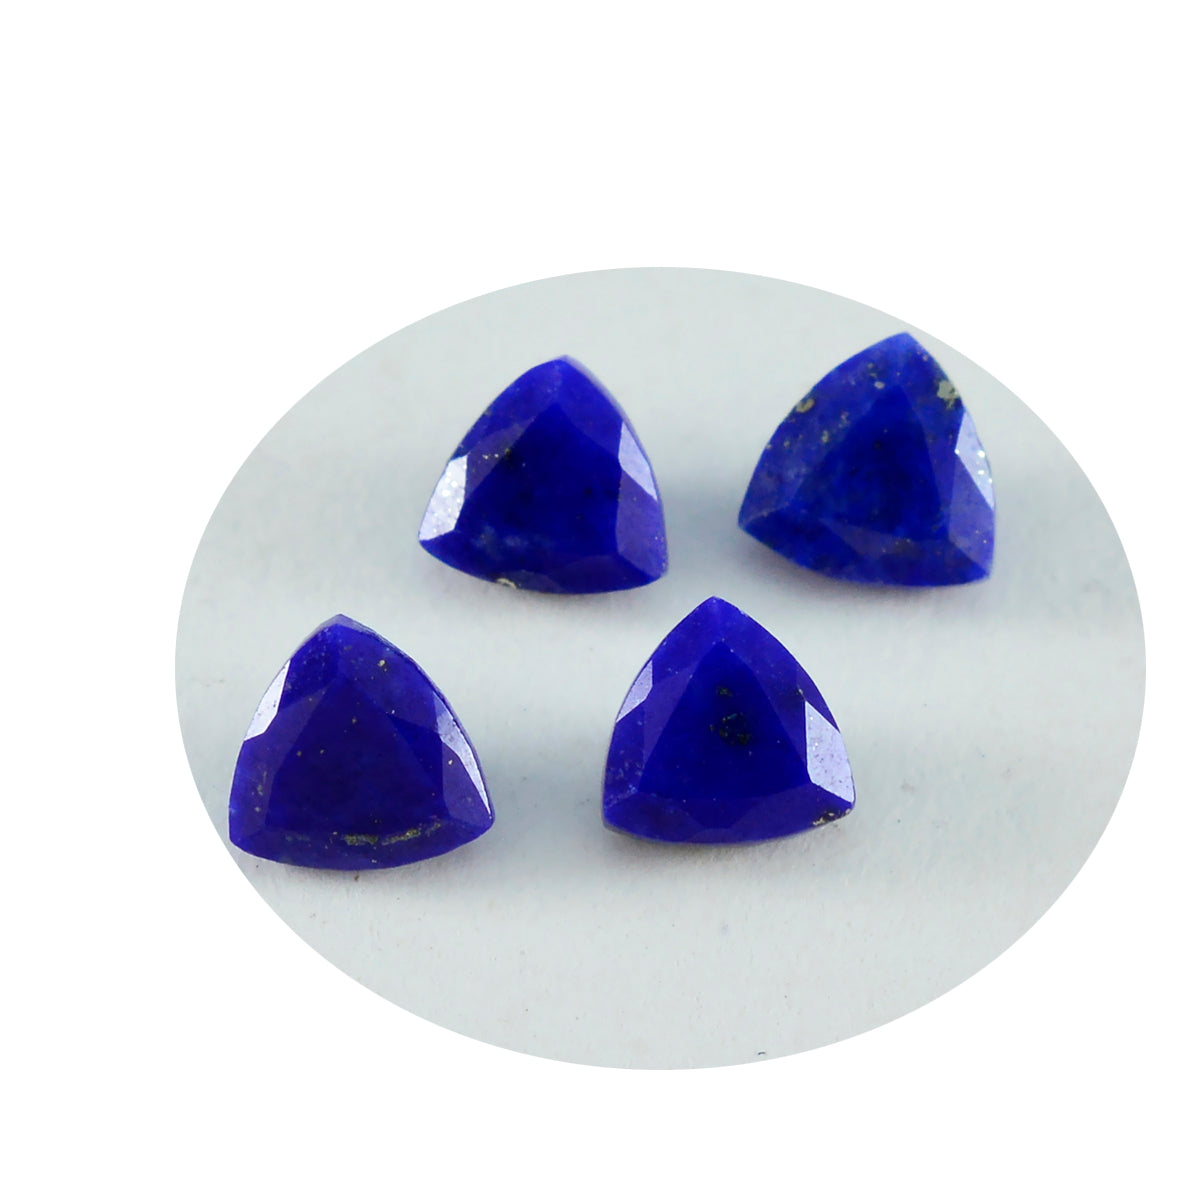 Riyogems 1 pièce lapis lazuli bleu naturel à facettes 8x8mm forme trillion qualité incroyable pierre en vrac